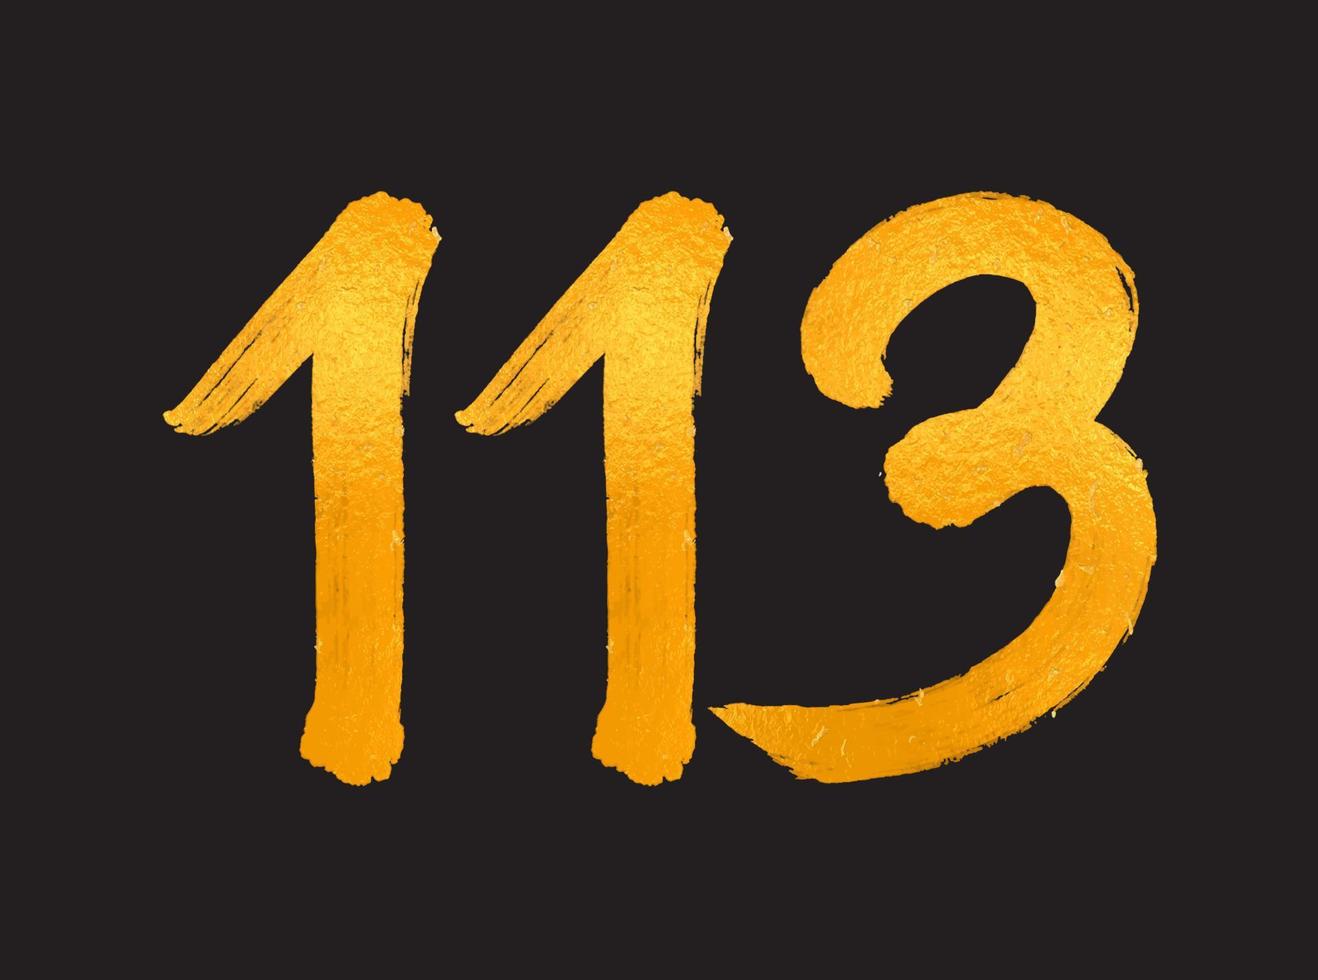 113 numero logo vettore illustrazione, 113 anni anniversario celebrazione vettore modello, 113° compleanno, oro lettering numeri spazzola disegno mano disegnato schizzo, numero logo design per Stampa, t camicia